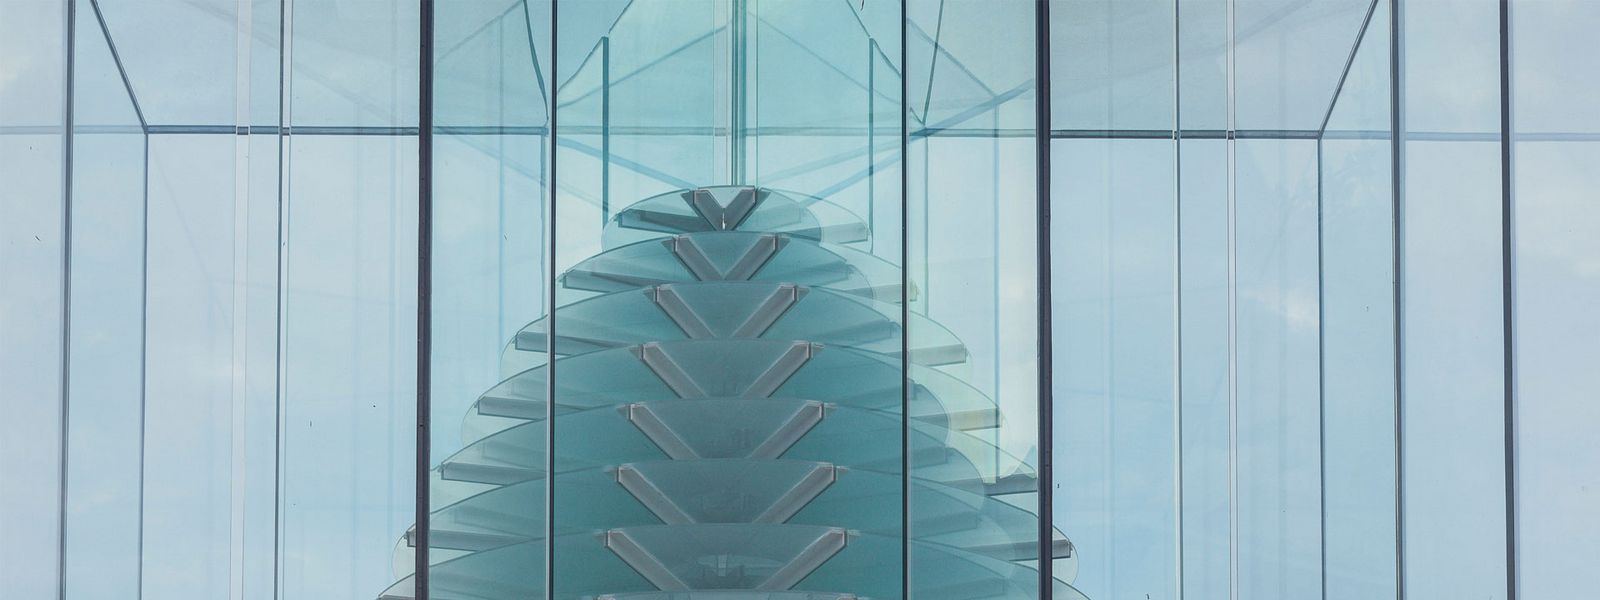 Das 12m hohe Glas-Kunstwerk als Hommage an Constantin Brâncuși. ©Andrei Pandele